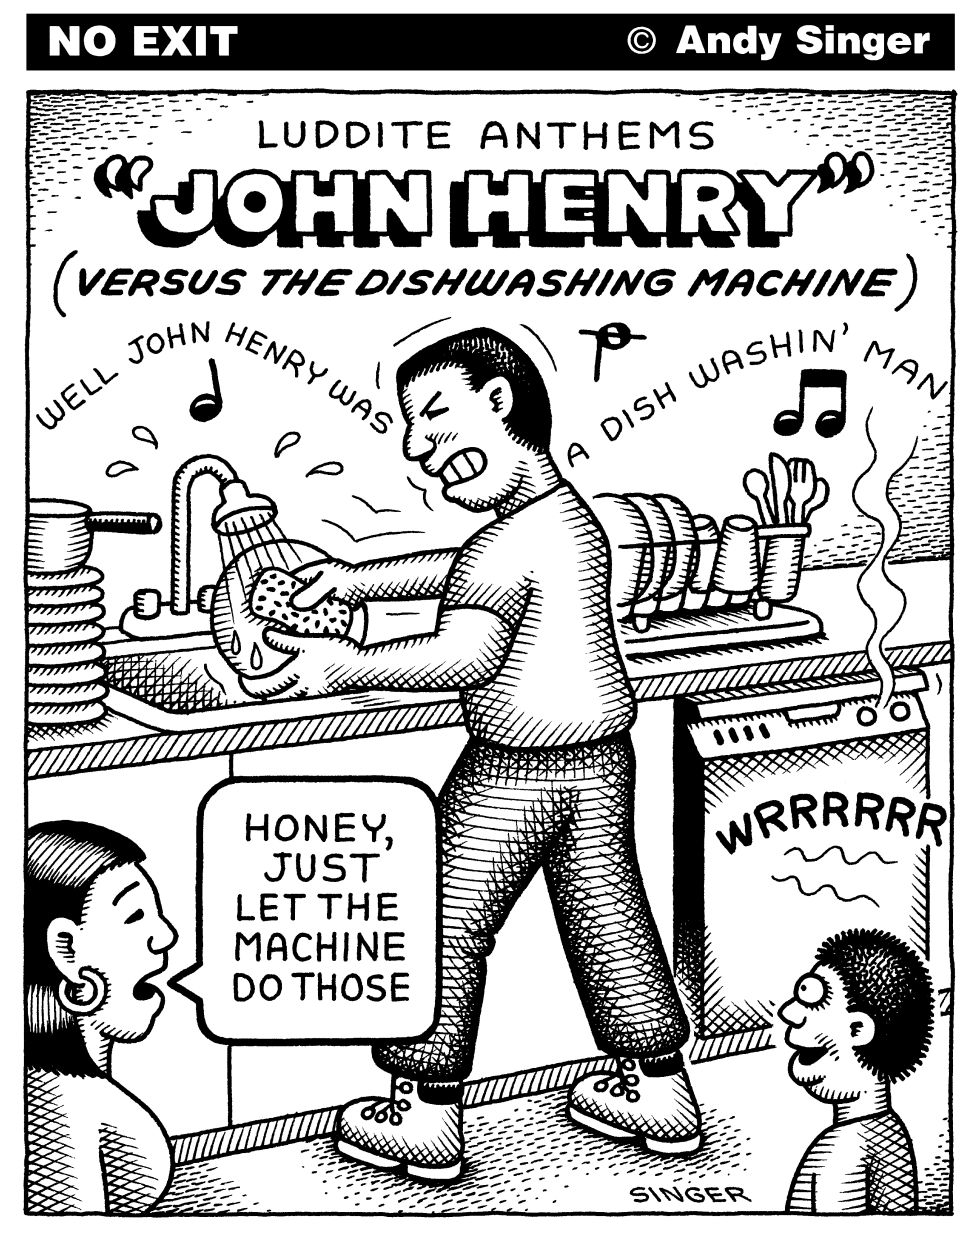 JOHN HENRY VERSUS DISHWASHING MACHINE by Andy Singer